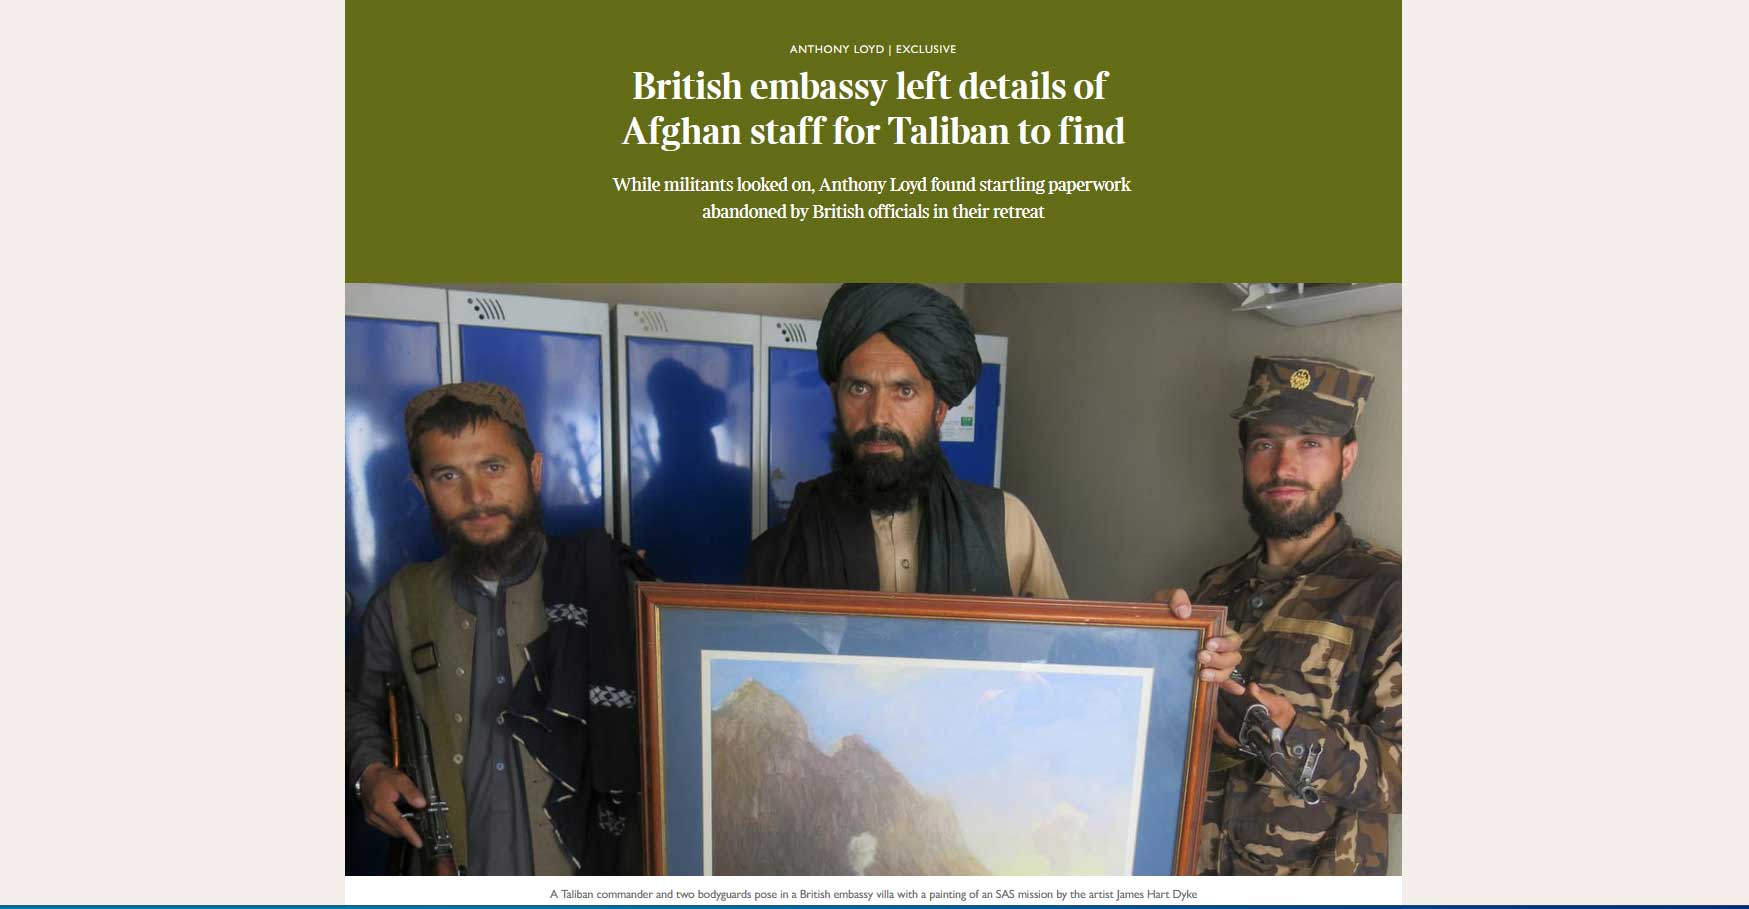 Αφγανιστάν: Στη βρετανική πρεσβεία ξεχάστηκαν έγγραφα με τα στοιχεία Αφγανών συνεργατών, αποκαλύπτουν οι Times